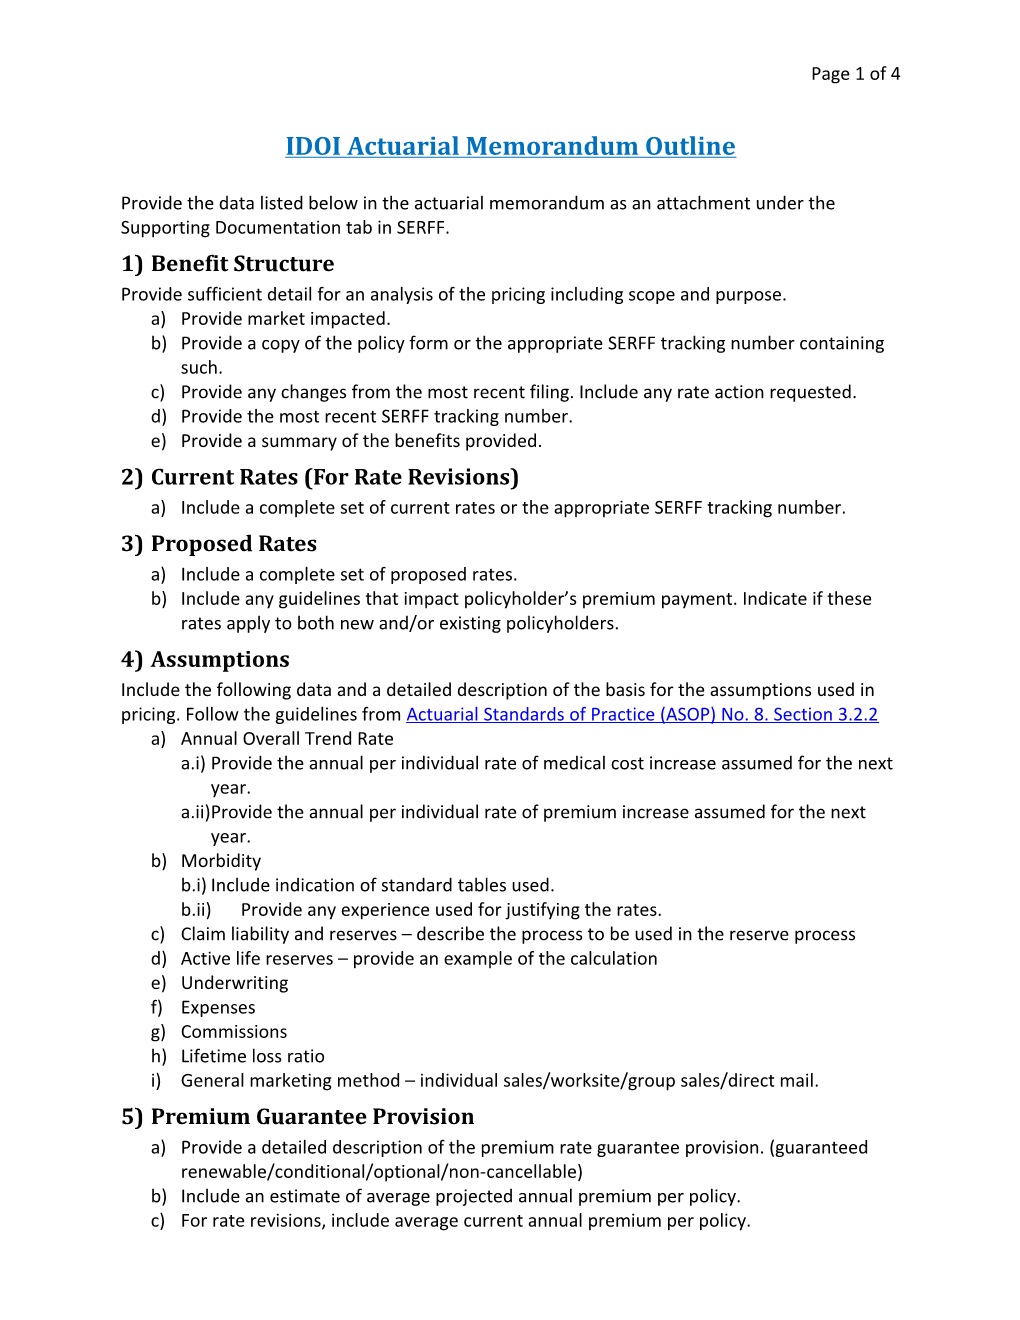 IDOI Actuarial Memorandum Outline: Basicpage 4 of 4